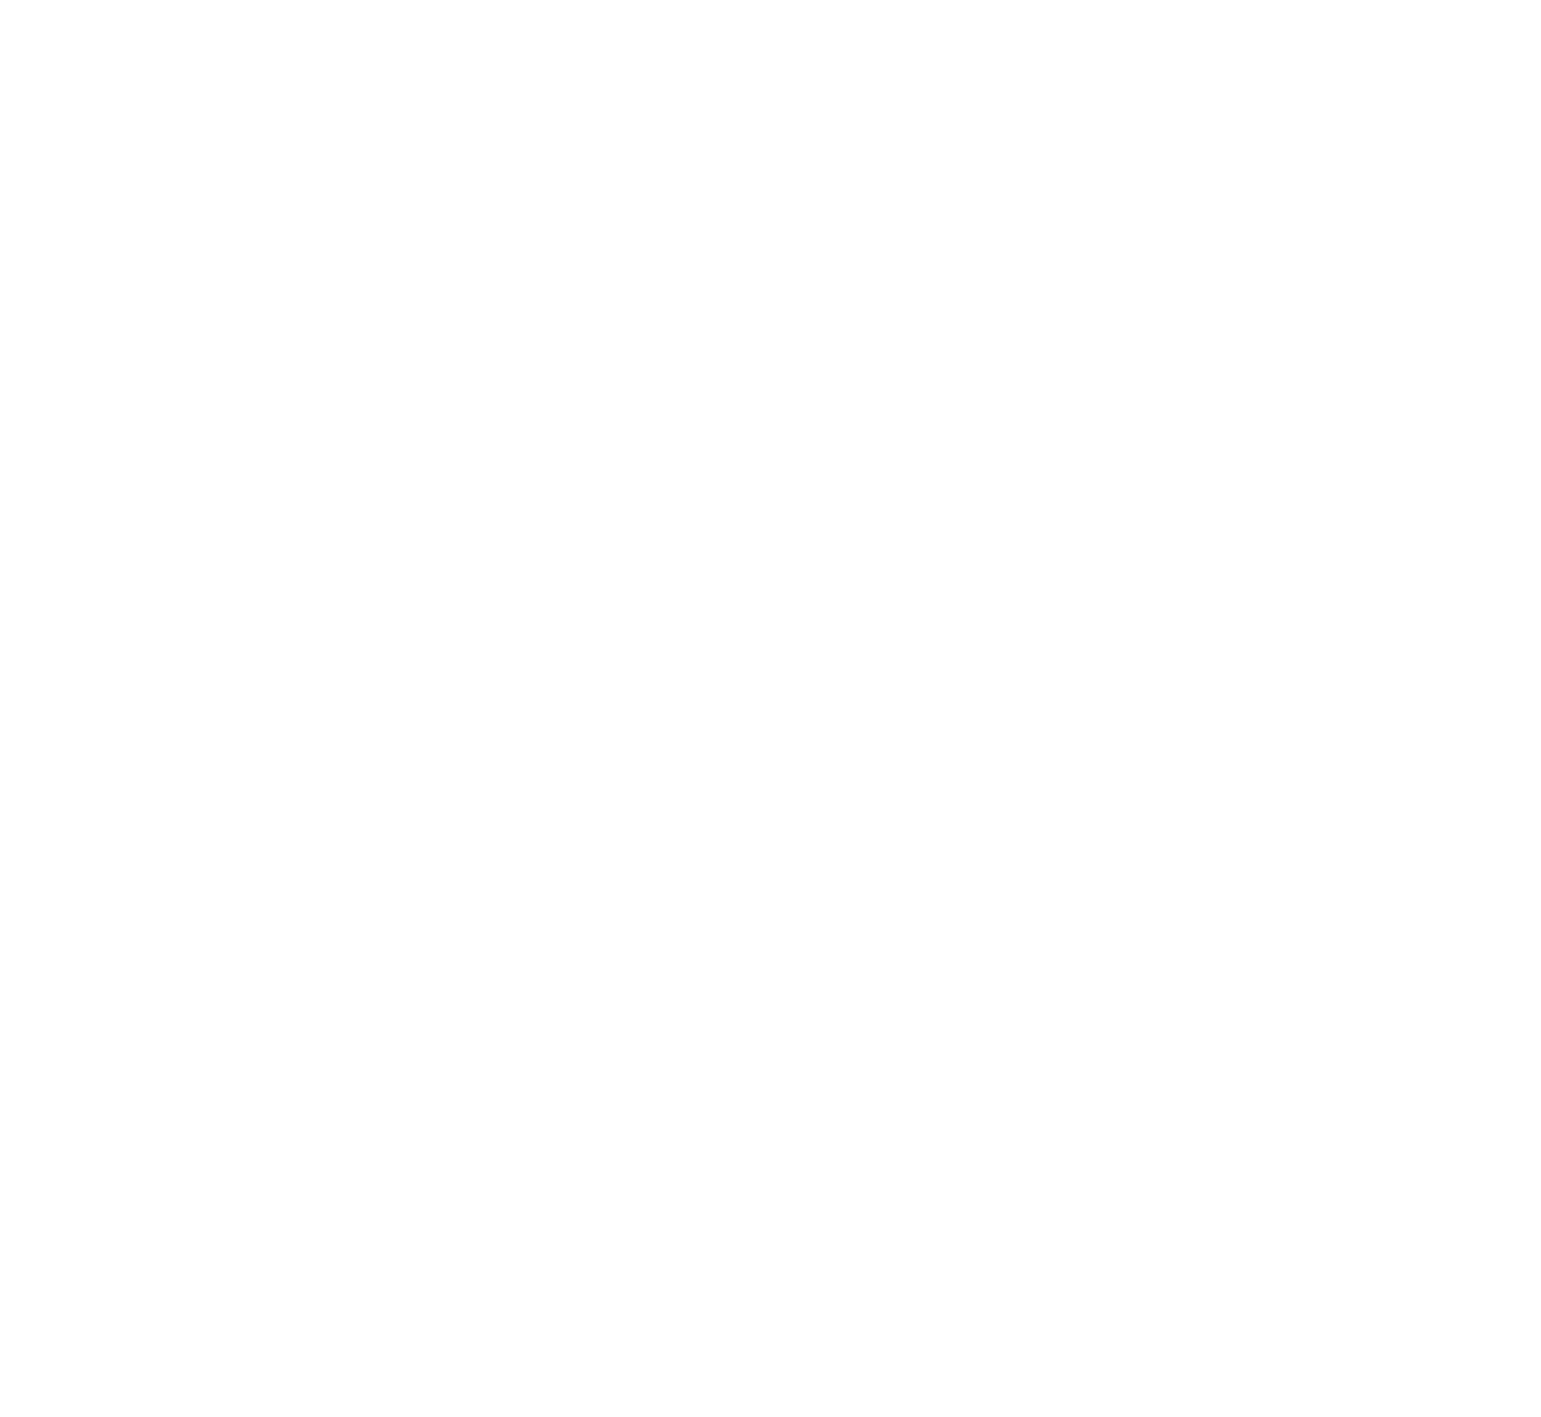 Grupo Supervielle logo for dark backgrounds (transparent PNG)